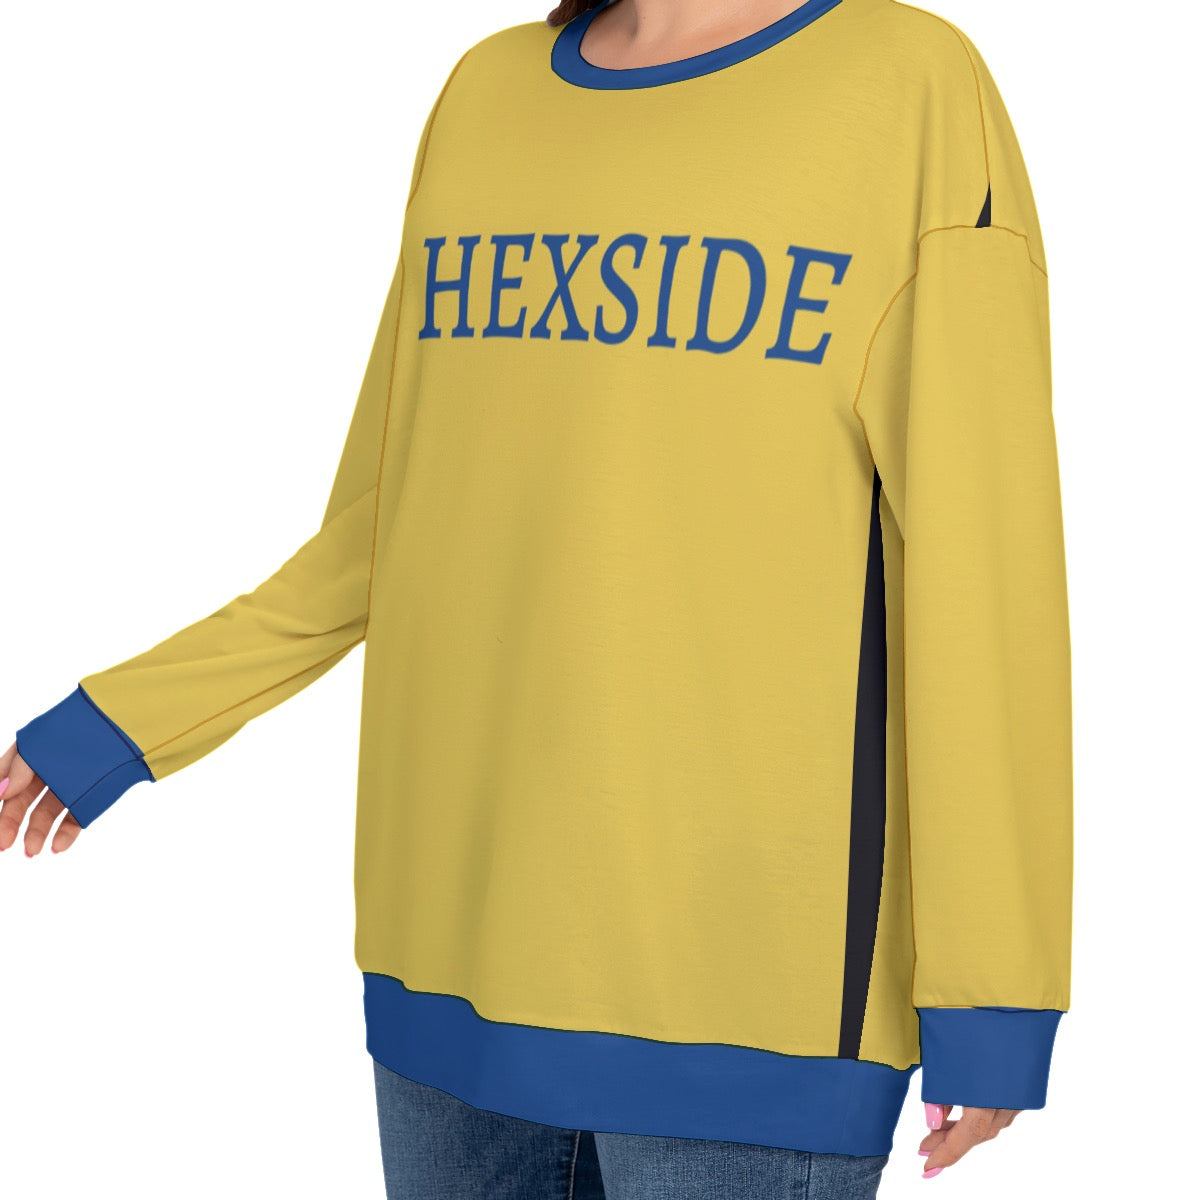 Hexside Pride Sweatshirt